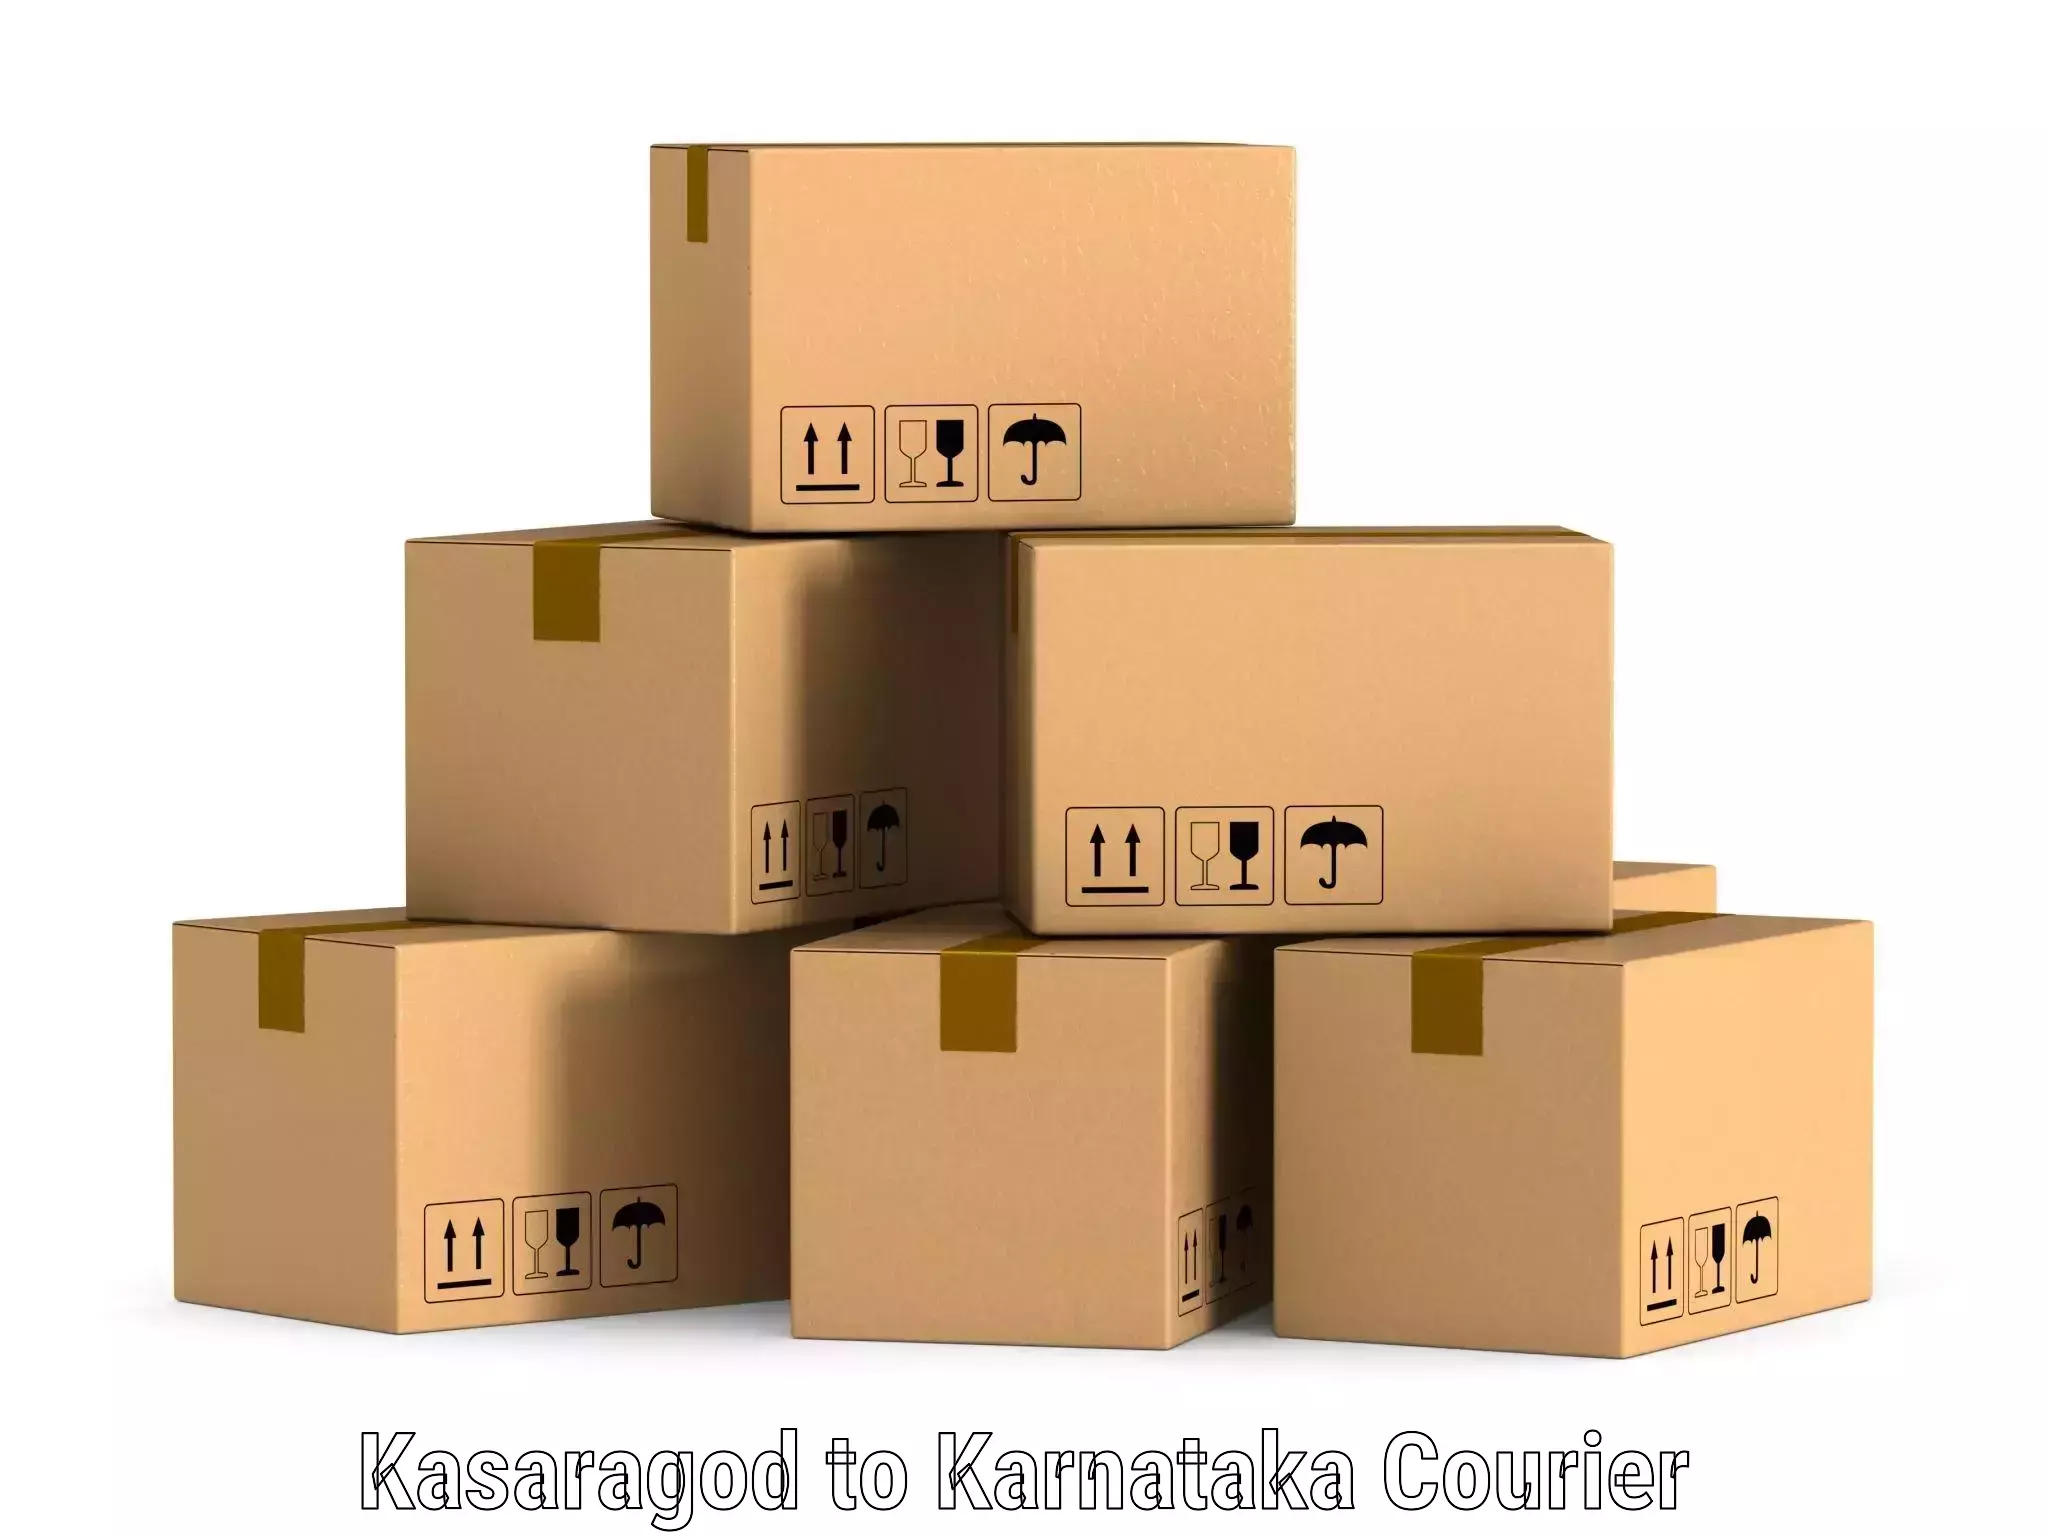 Nationwide shipping coverage Kasaragod to Nelamangala